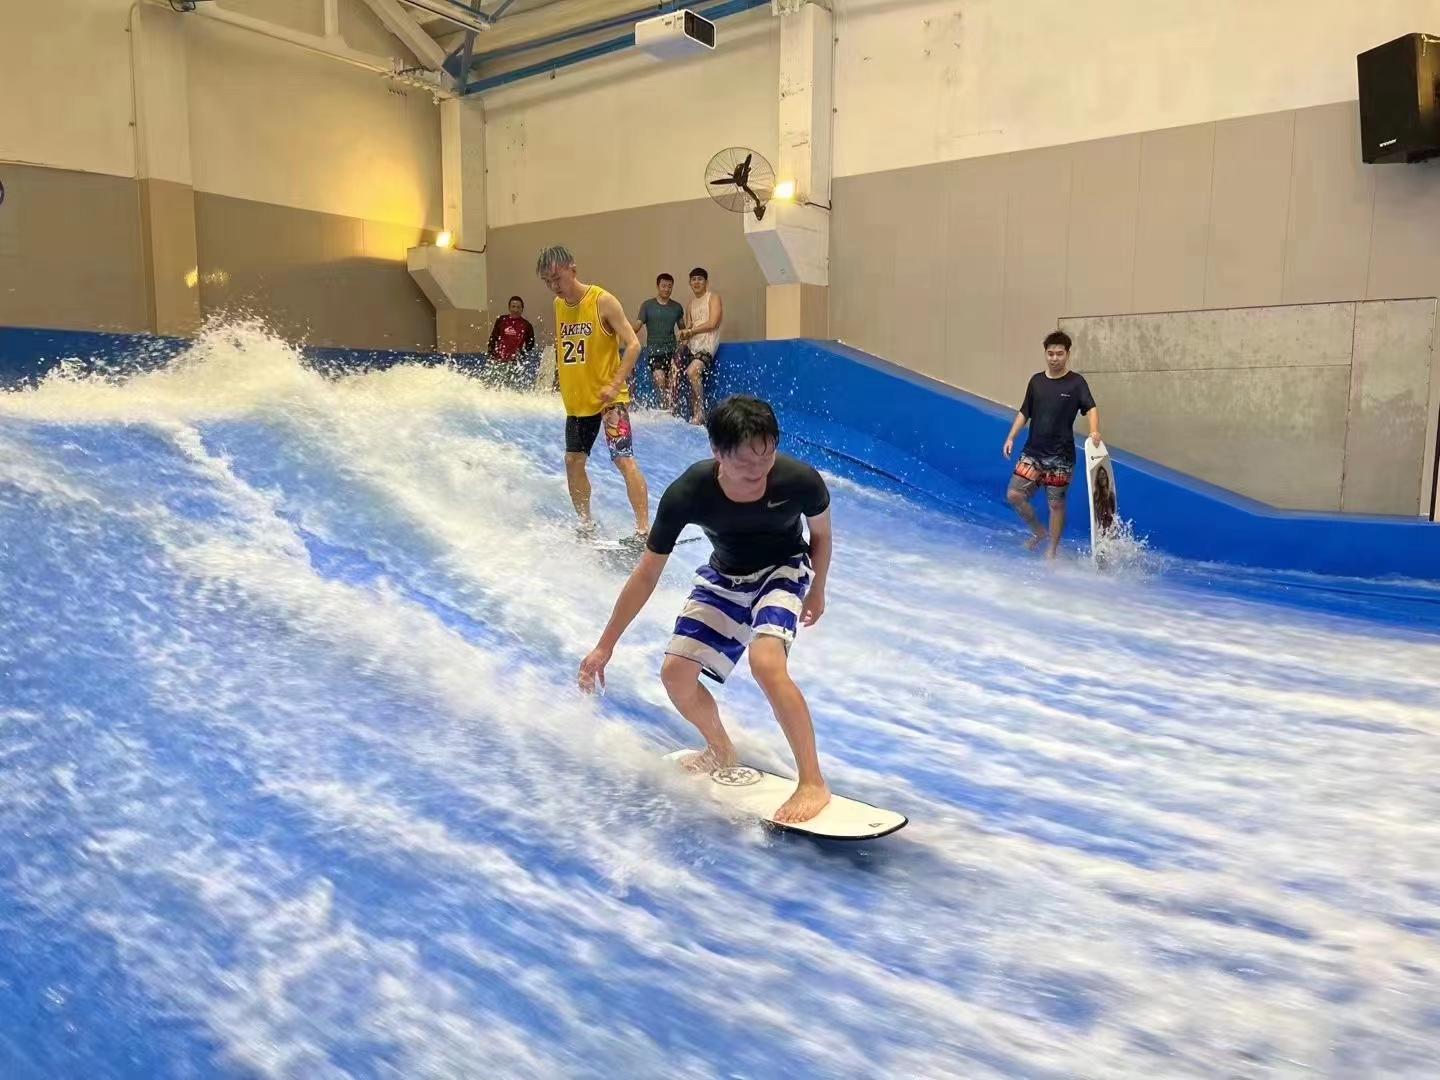 漫波游乐室内冲浪模拟器 商场机源头供货滑板 冲浪设备